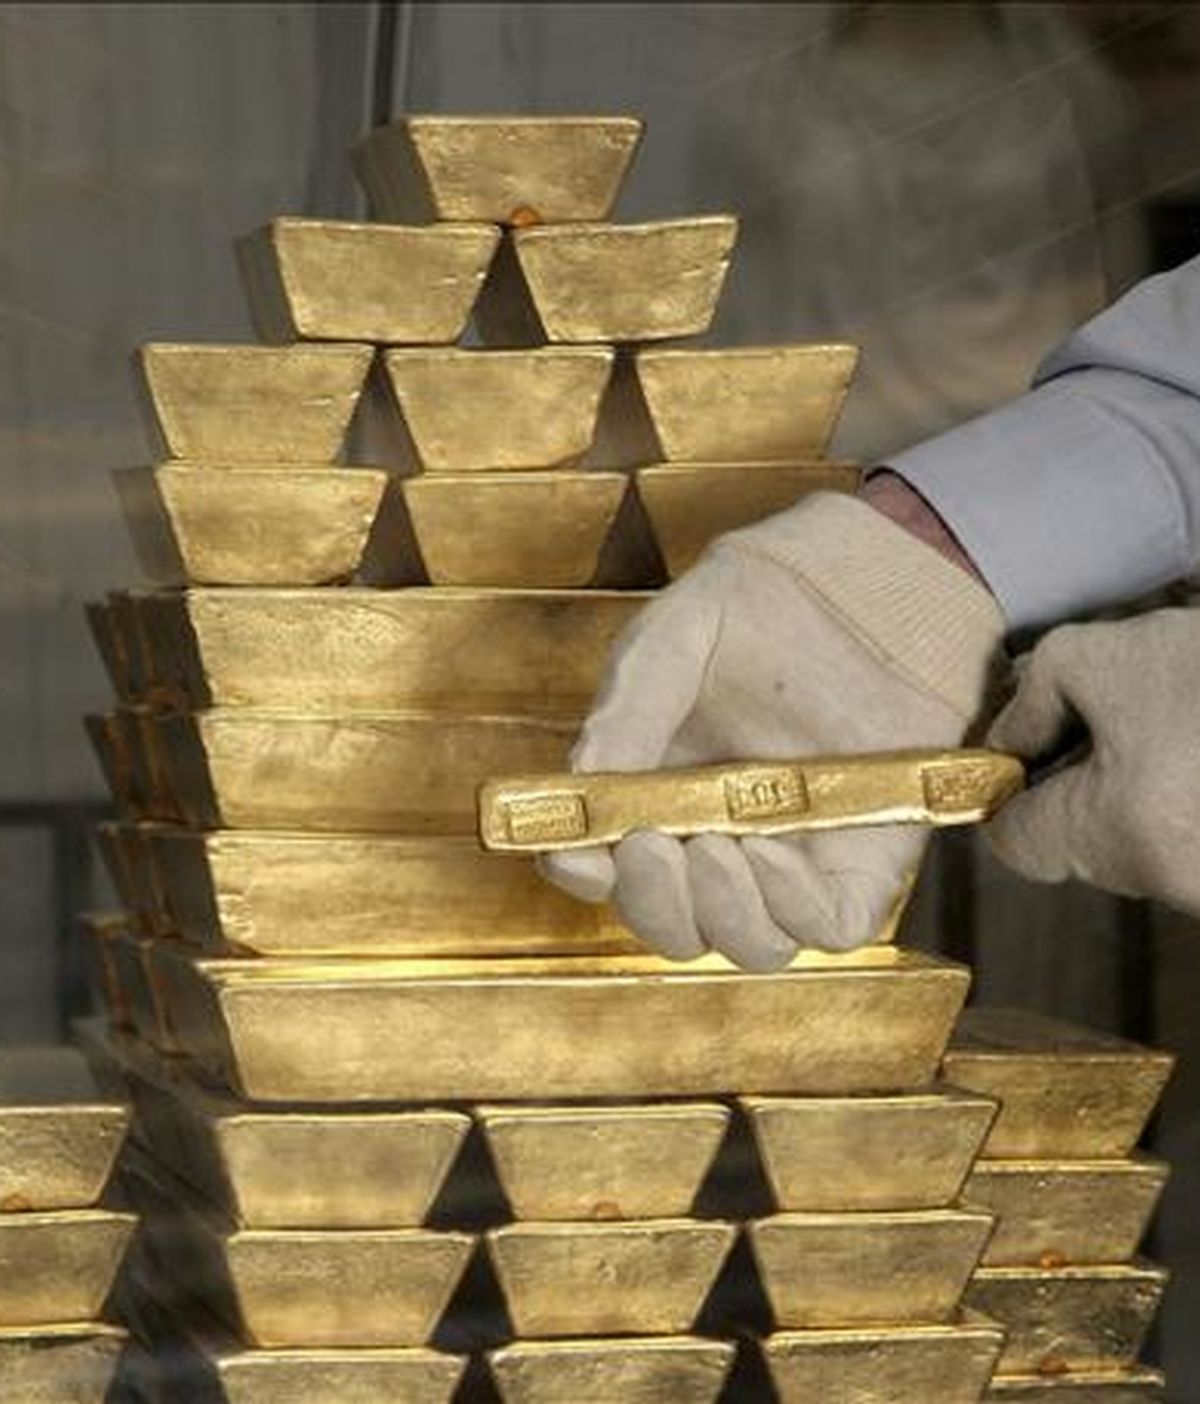 El precio de la onza de oro superó hoy la barrera de los 1.300 dólares en el mercado de Londres en su imparable escalada desde principios de año, un periodo en el que el valor del metal dorado se ha incrementado un 17,4 por ciento. EFE/Archivo